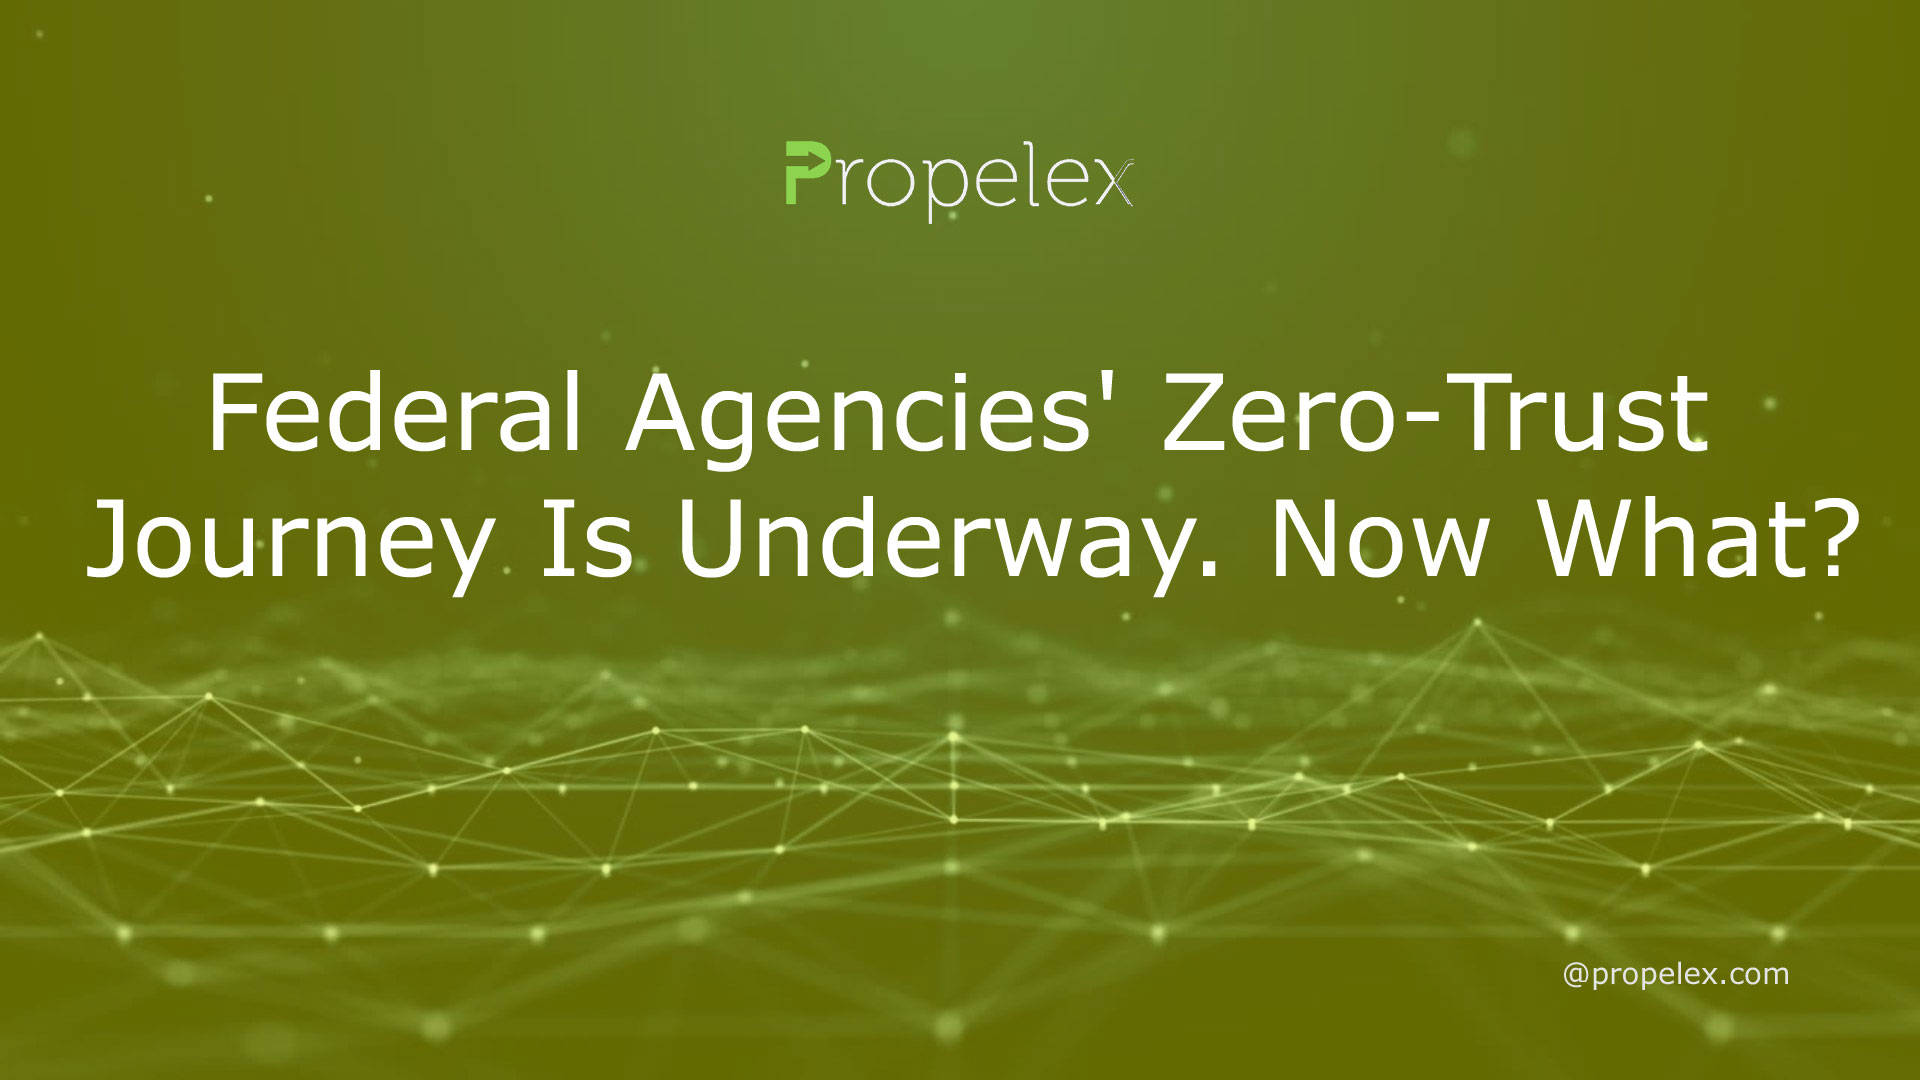 Federal Agencies' Zero-Trust Journey Is Underway. Now What?